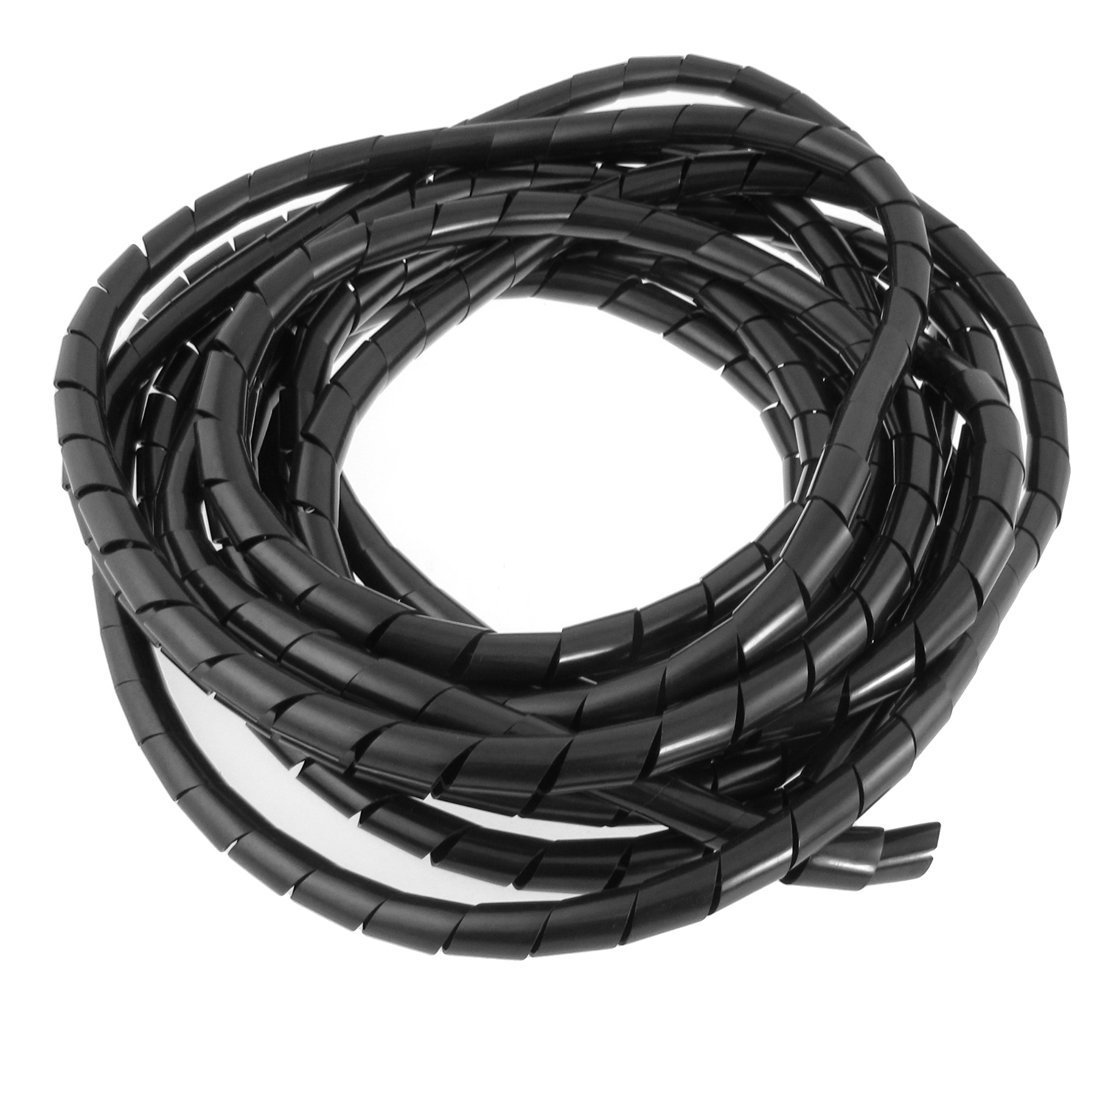 conduit cables